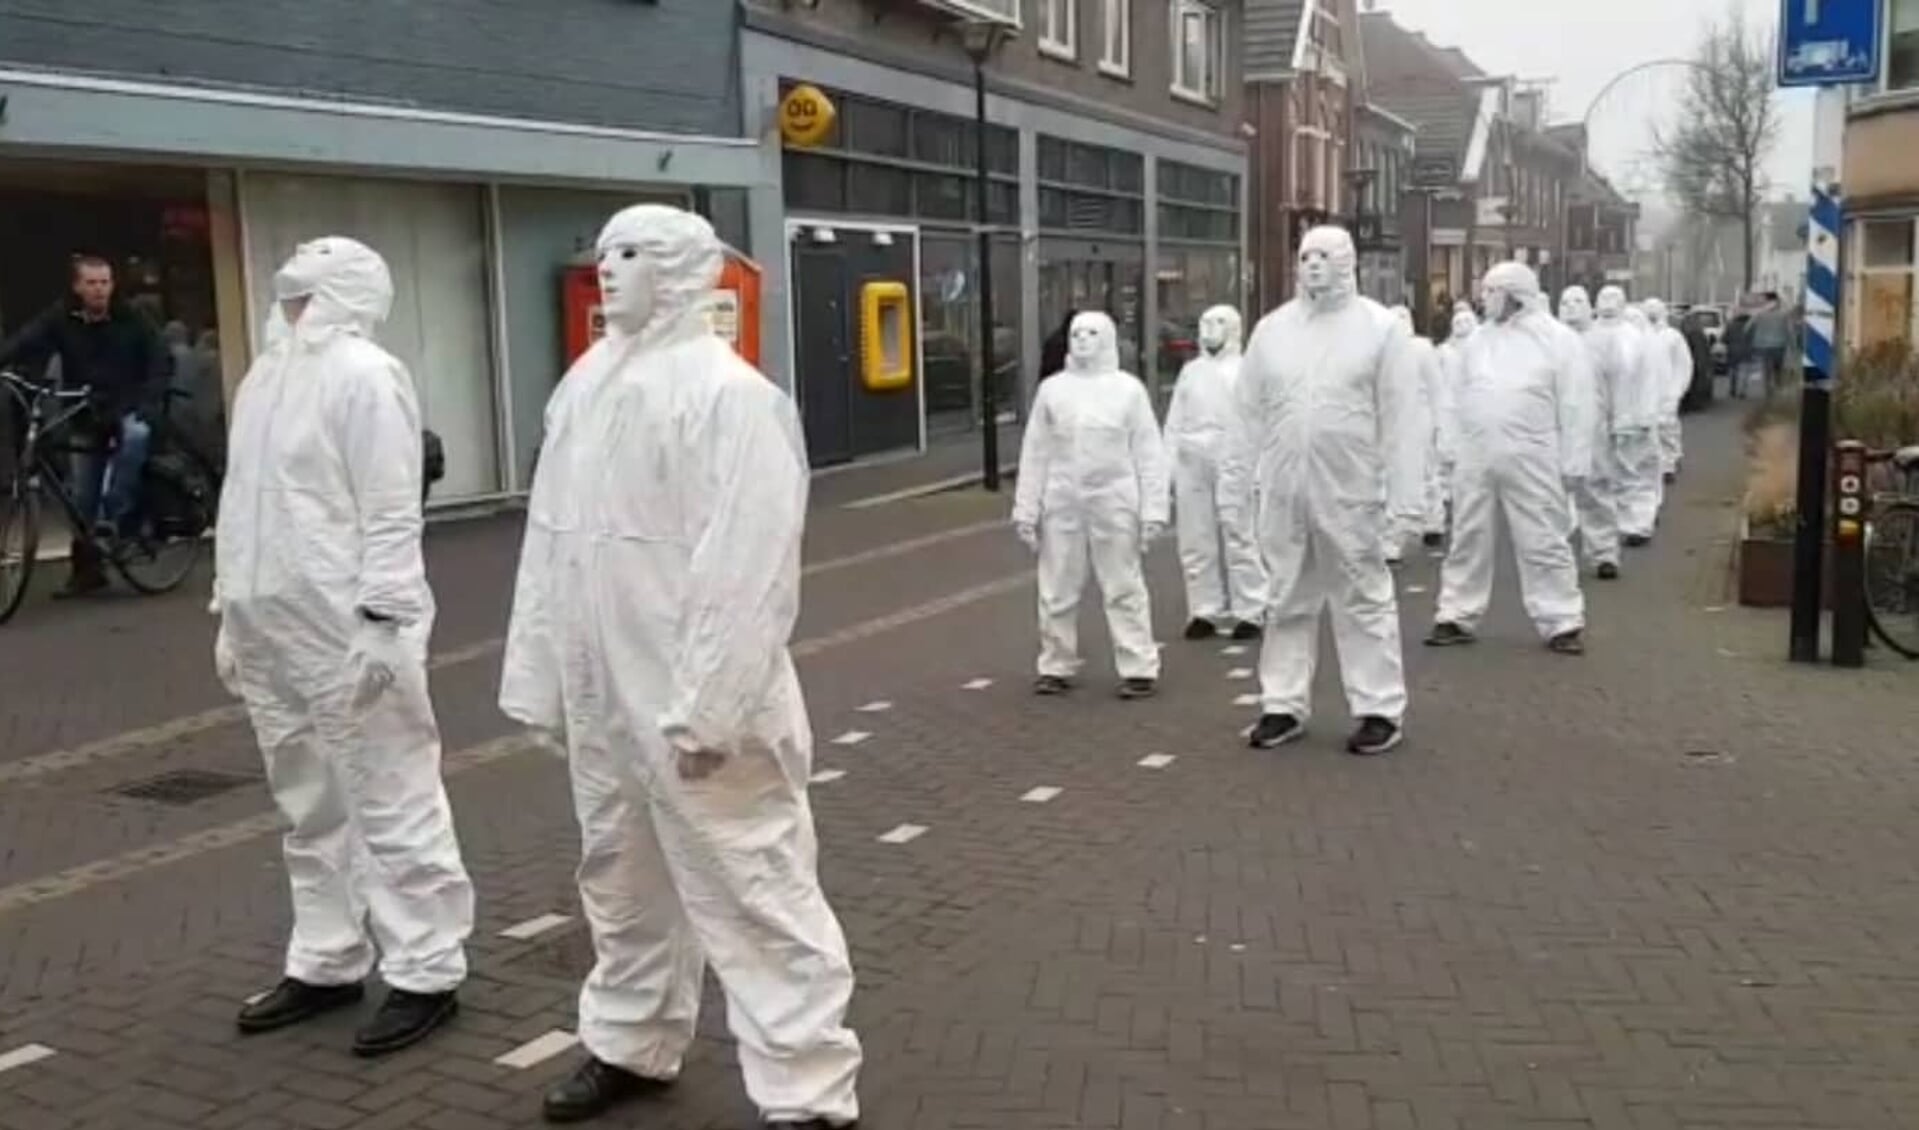 'Witte pakken' demonstreren in Aalten. Foto: Rick Bussink